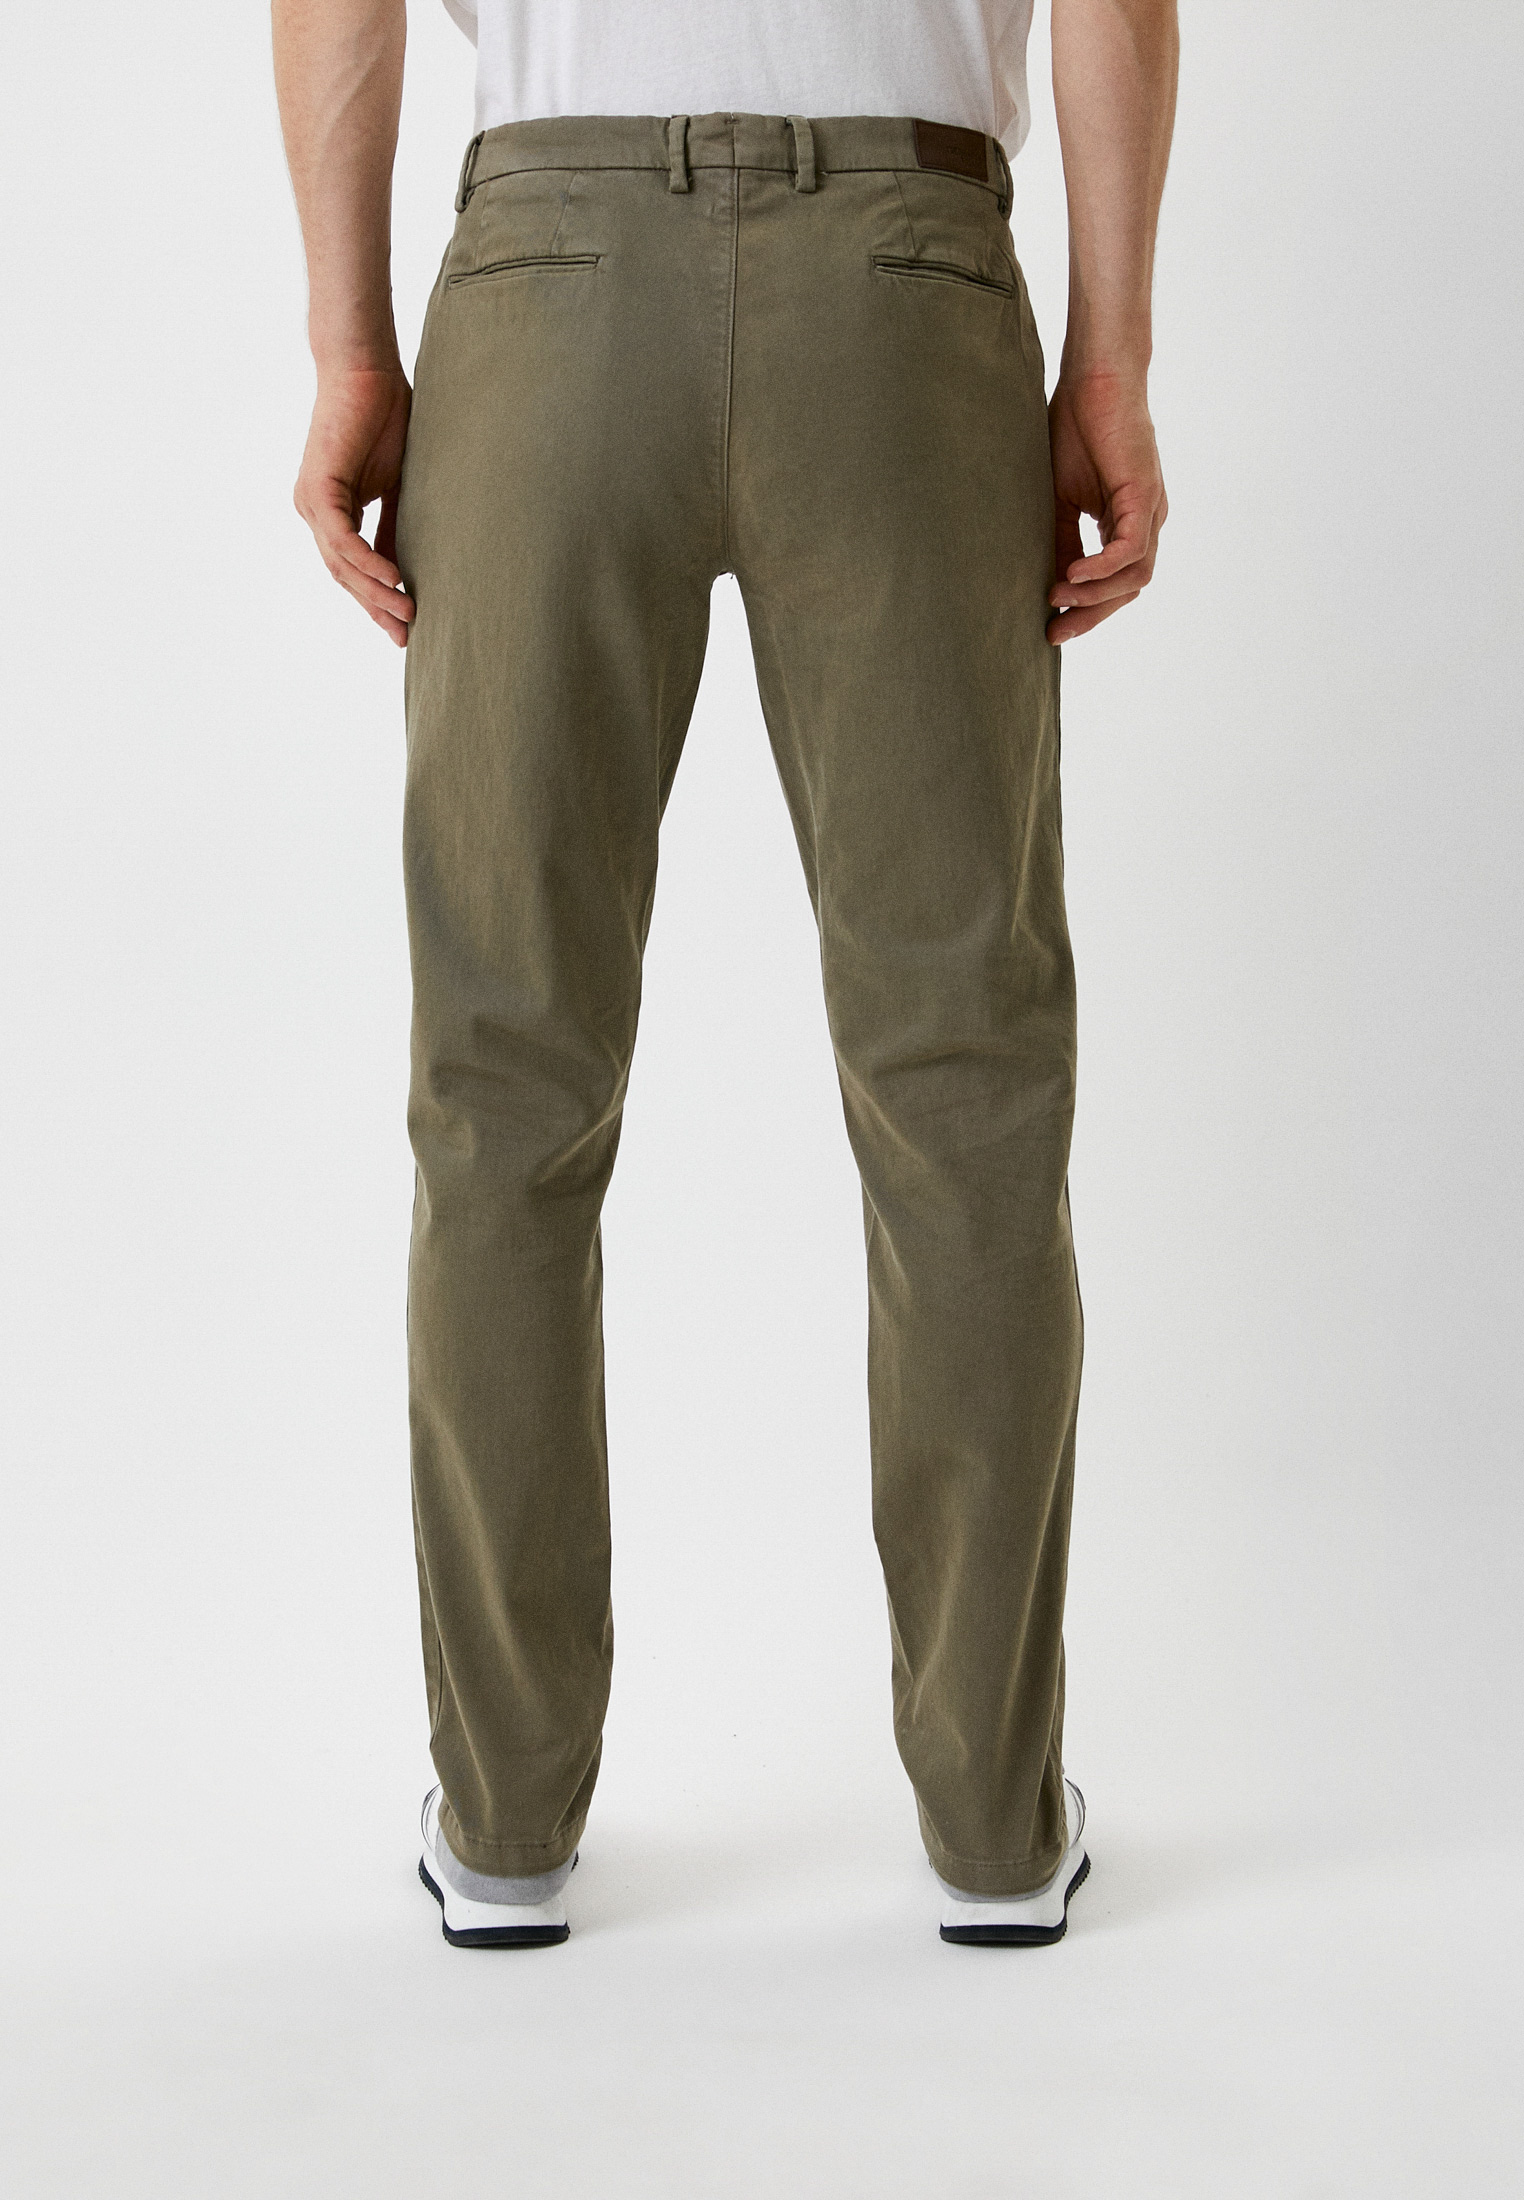 Мужские повседневные брюки Trussardi (Труссарди) 52P00000-1T003207-H-001: изображение 3